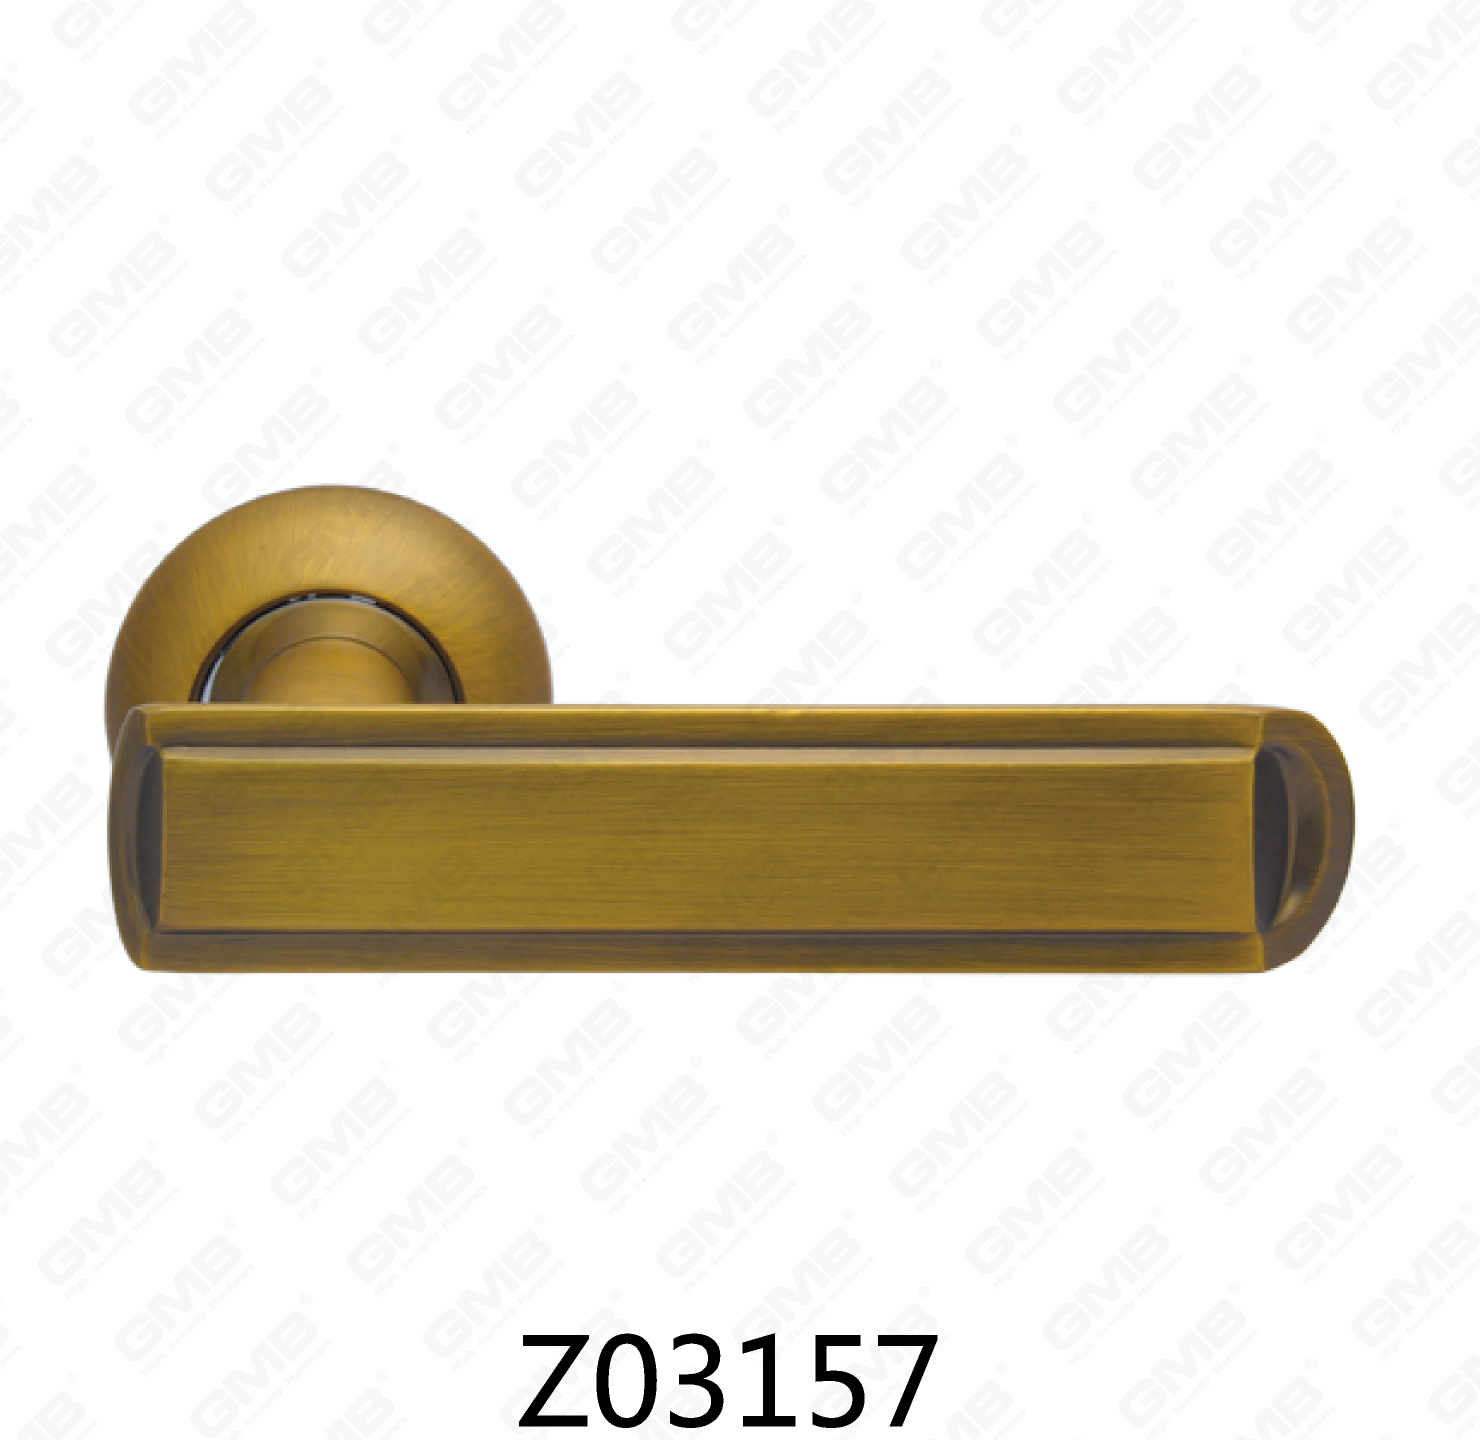 ידית דלת רוזטת אלומיניום מסגסוגת אבץ של Zamak עם רוזטה עגולה (Z02157)